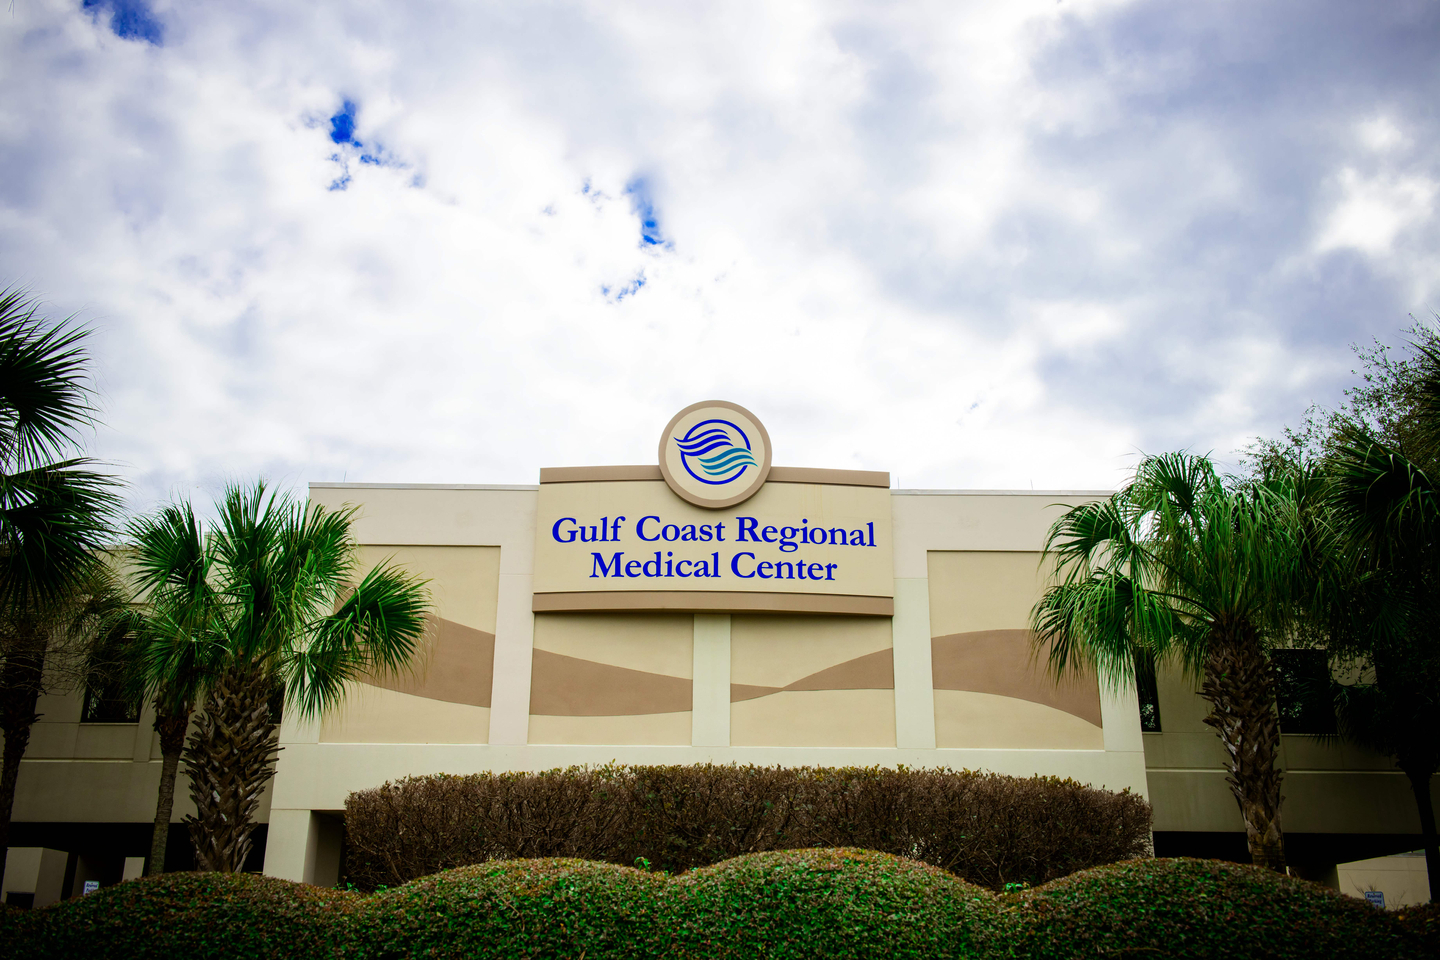 Exterior views of HCA Florida Gulf Coast Hospital